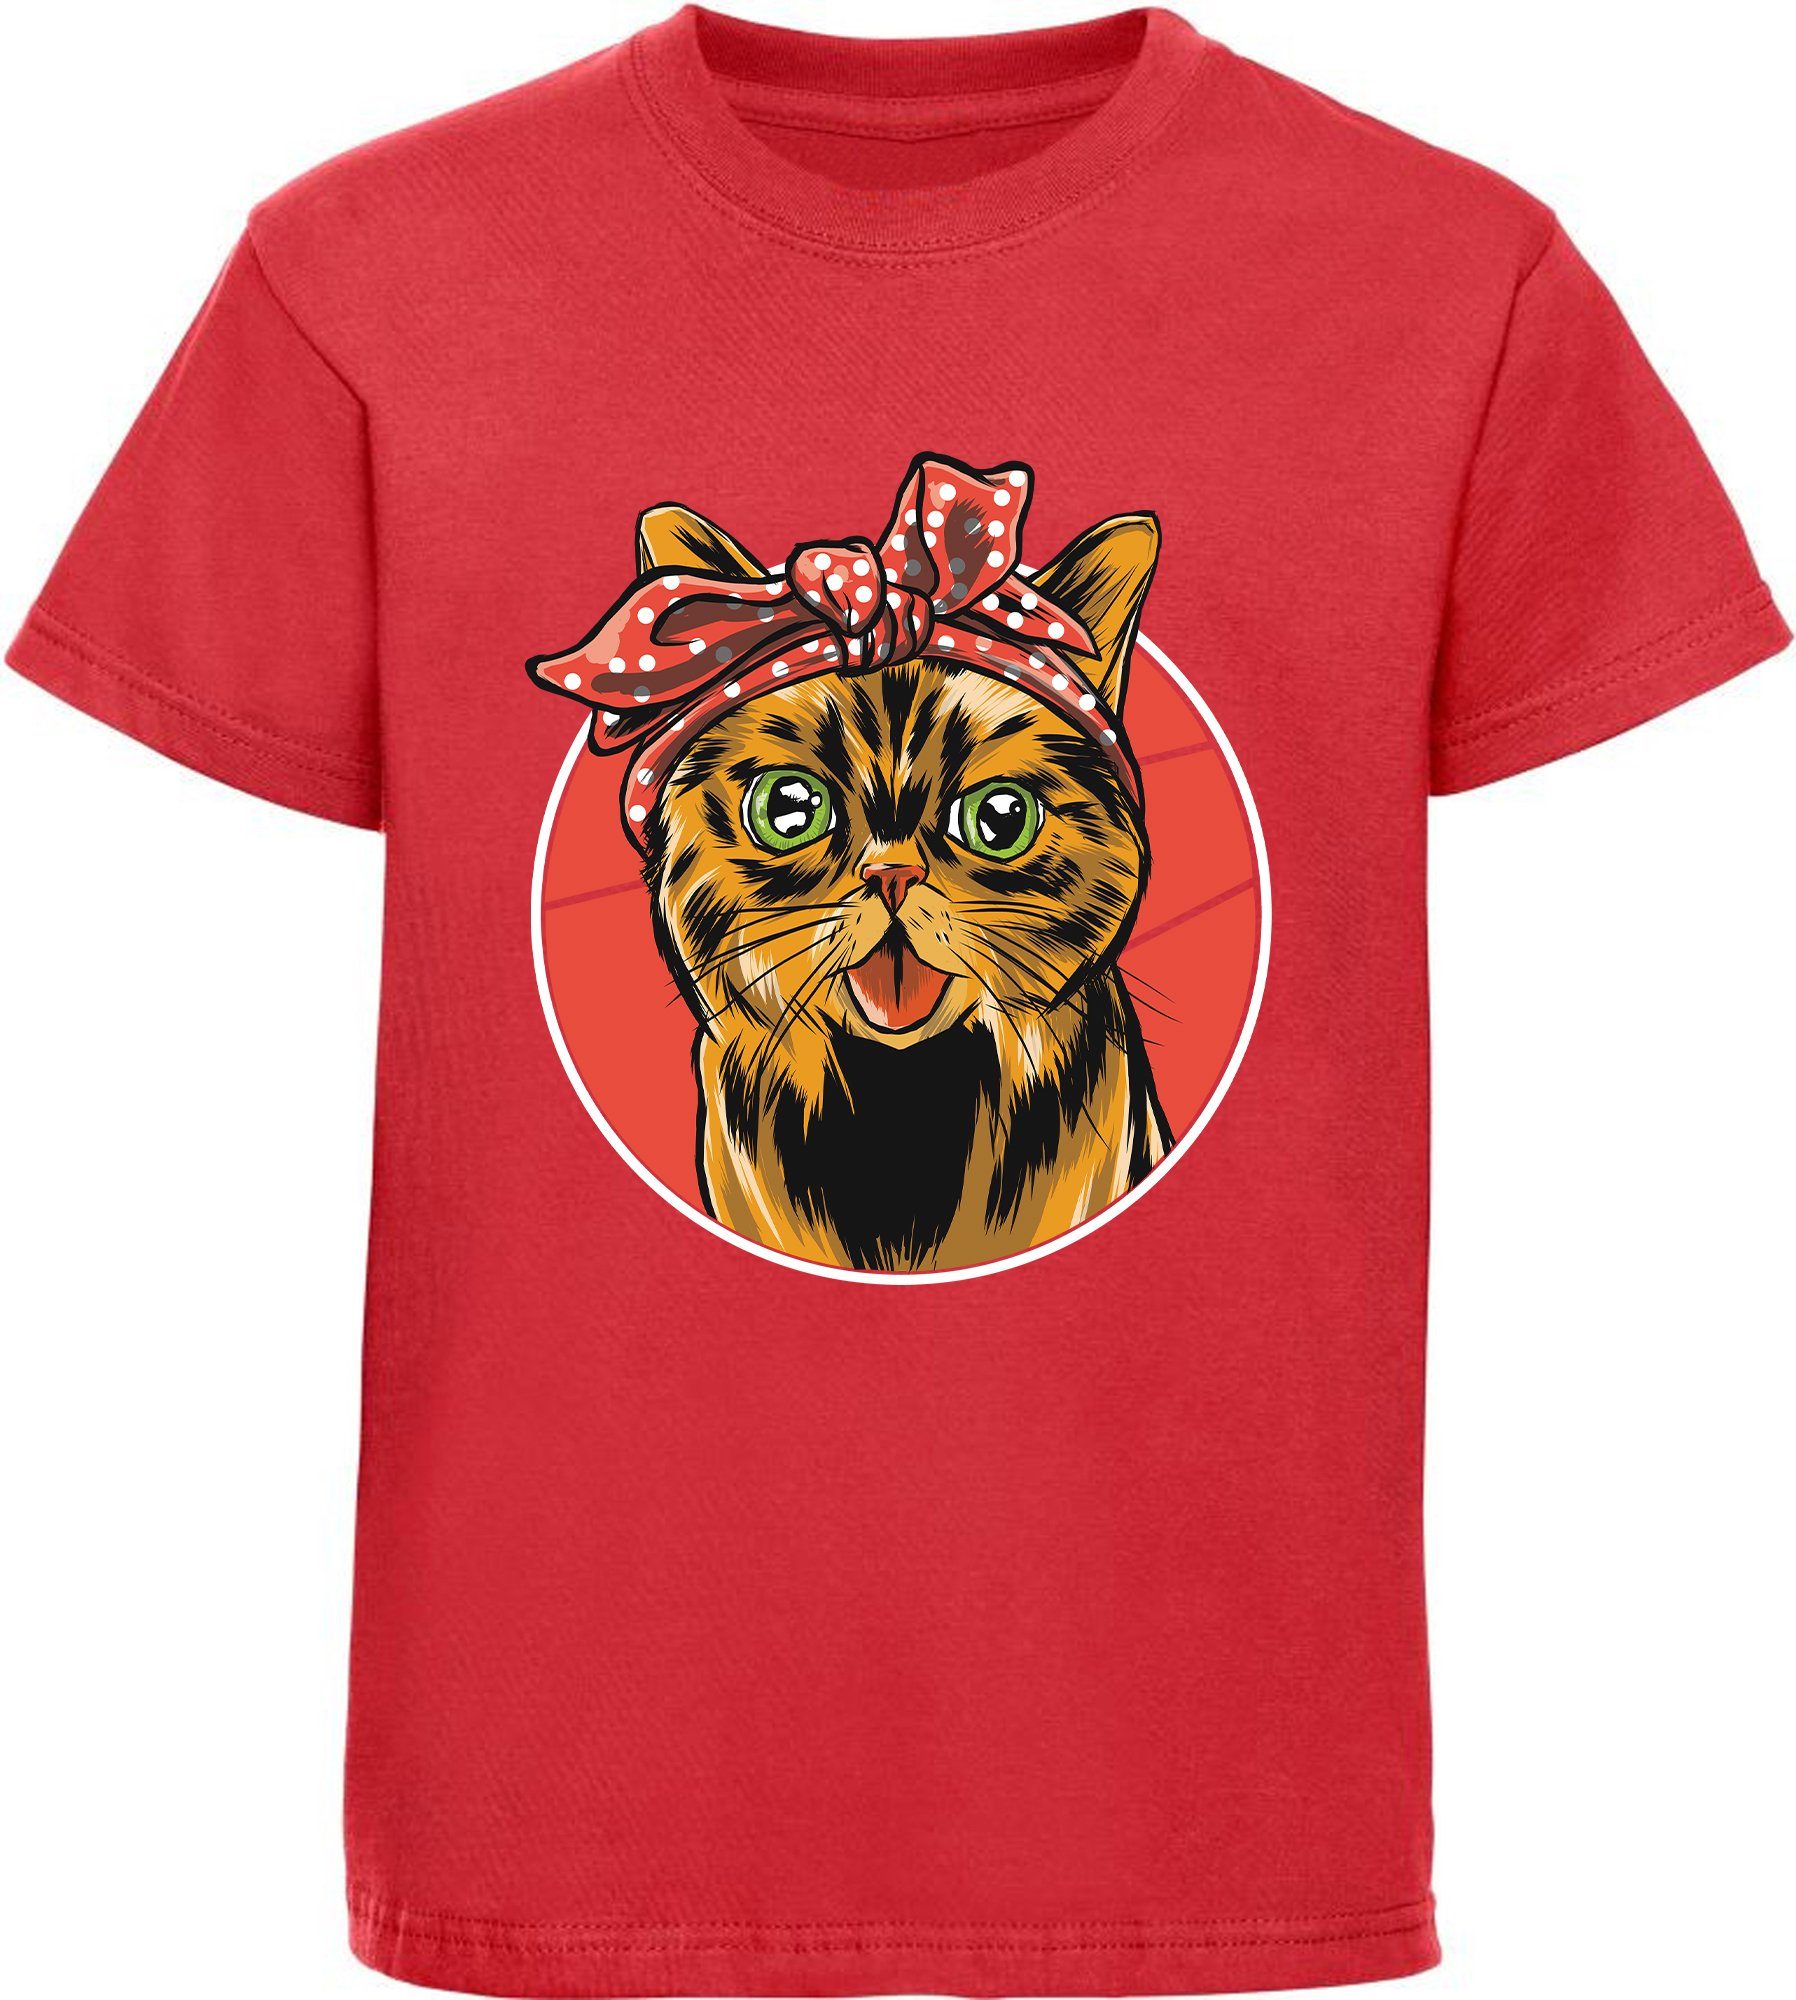 weiß, Mädchen bedrucktes MyDesign24 Print-Shirt Schleife i103 rosa, rot, T-Shirt Kinder Baumwollshirt mit schwarz, Katze mit Katze,